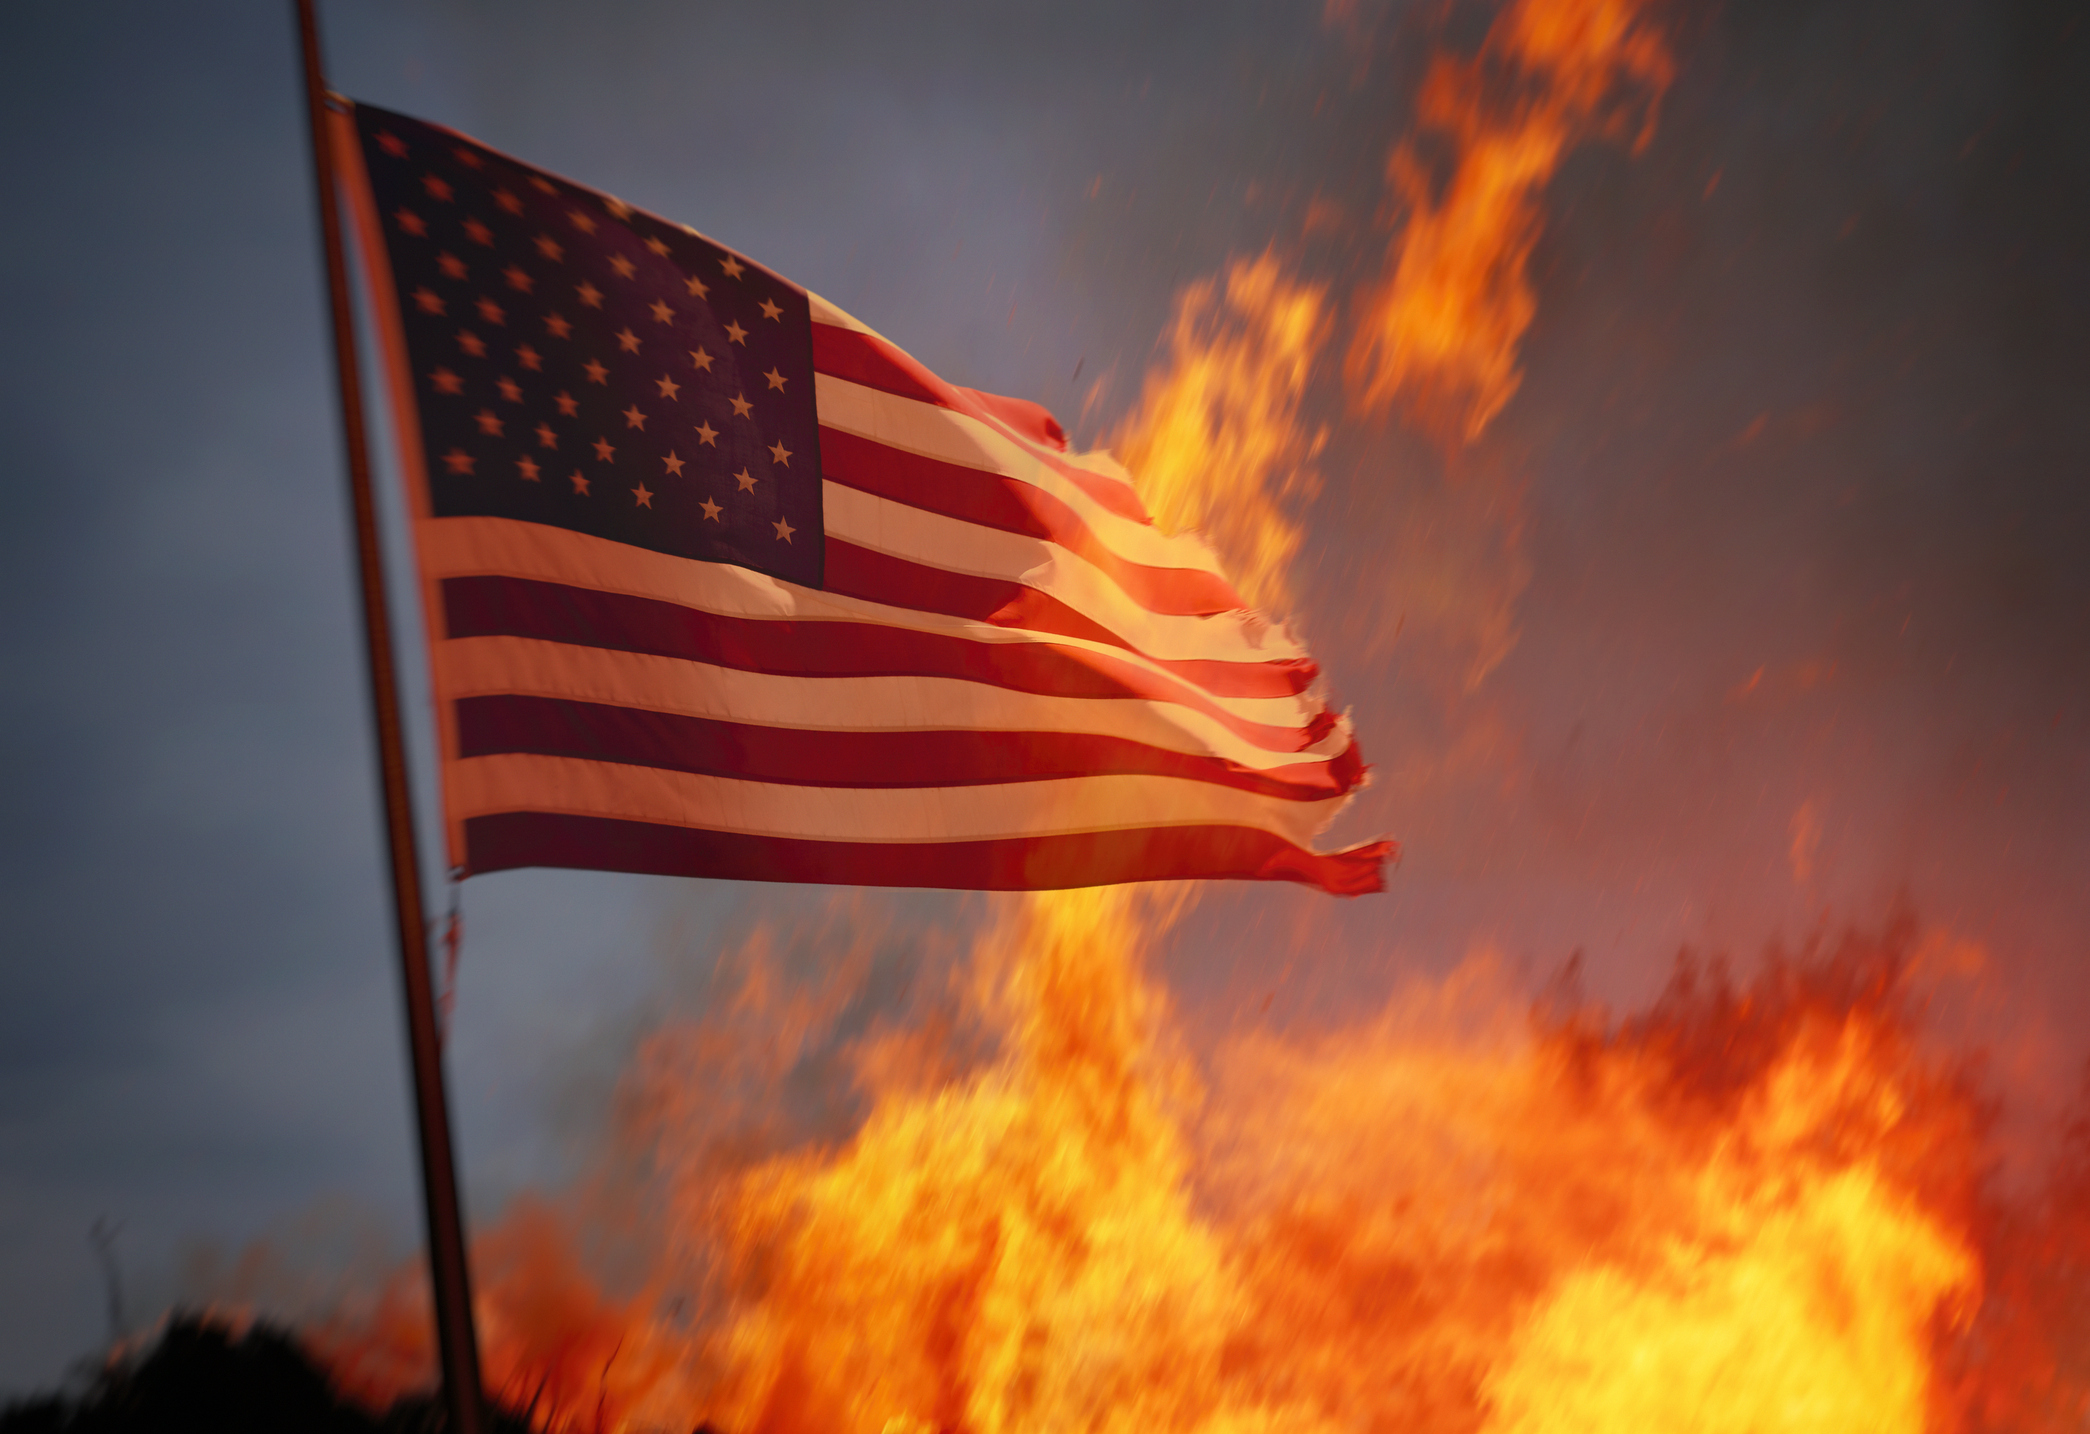 The United States burning